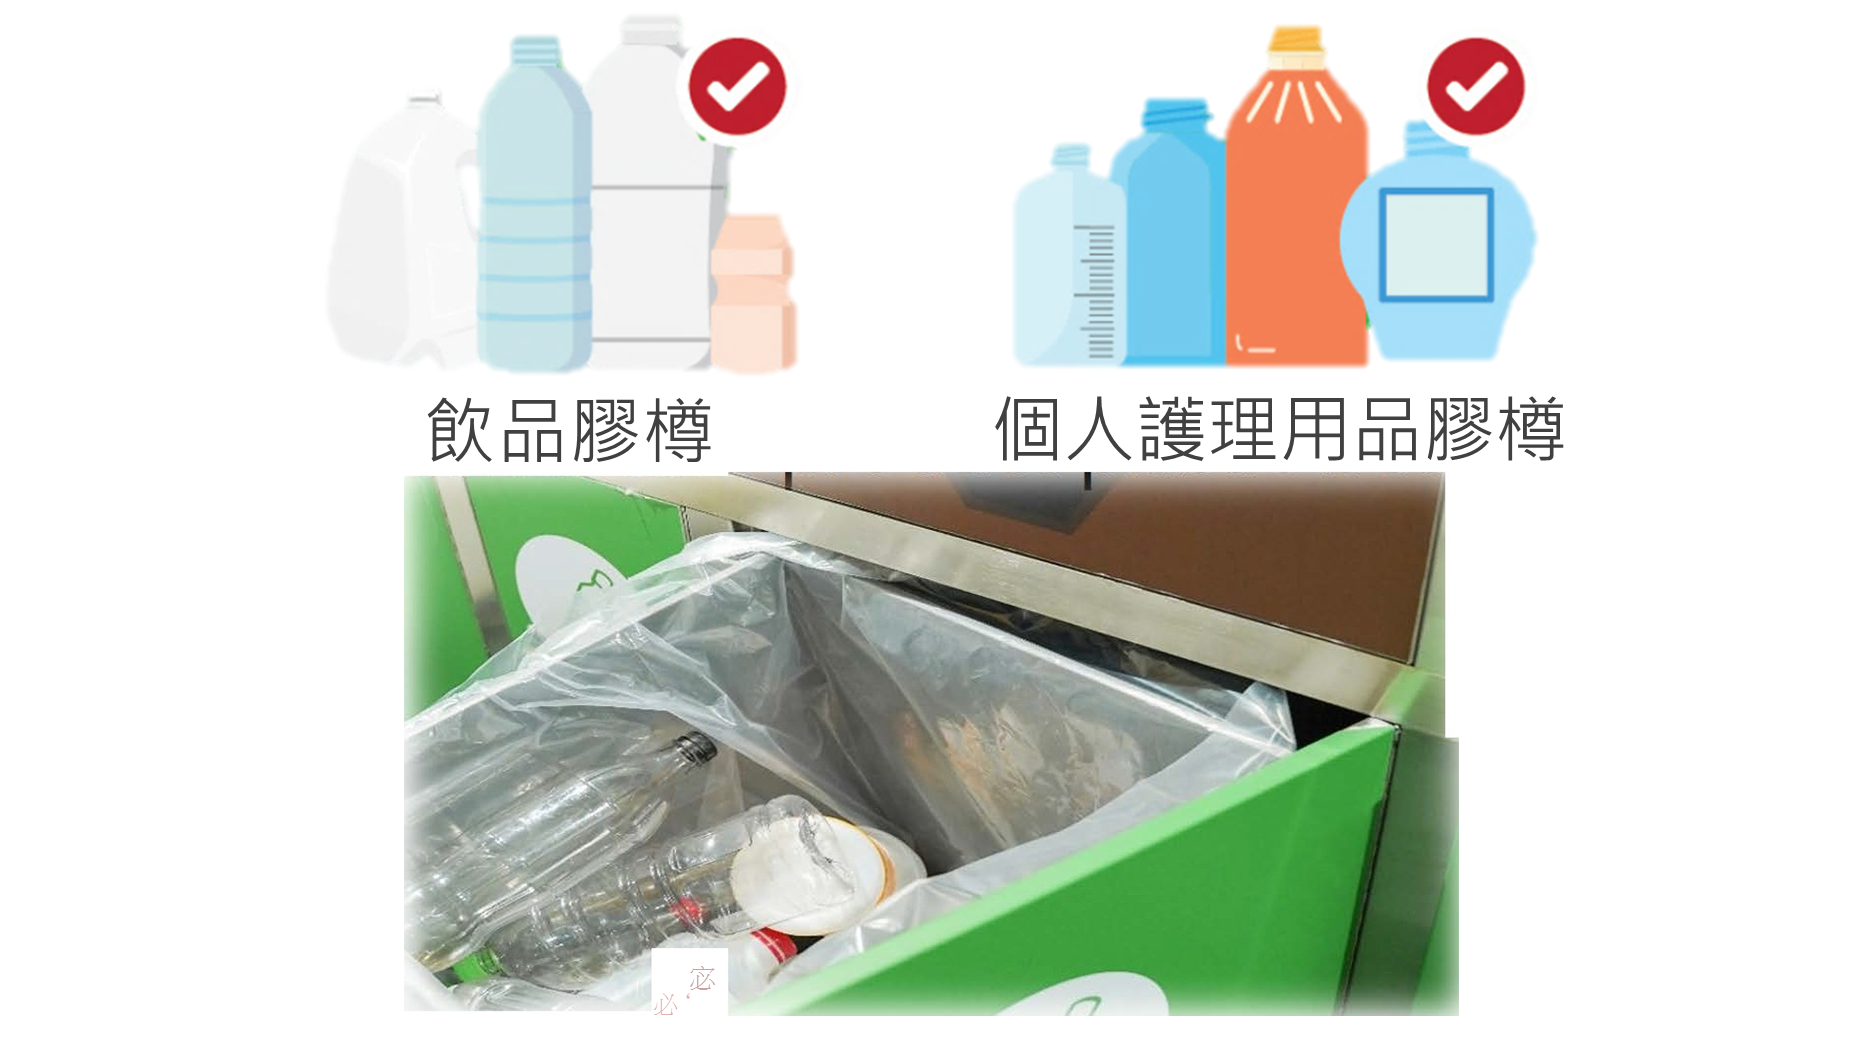 乾淨回收飲品膠樽,個人護理用品膠樽的貼士 - 除樽蓋,去招紙,沖乾淨